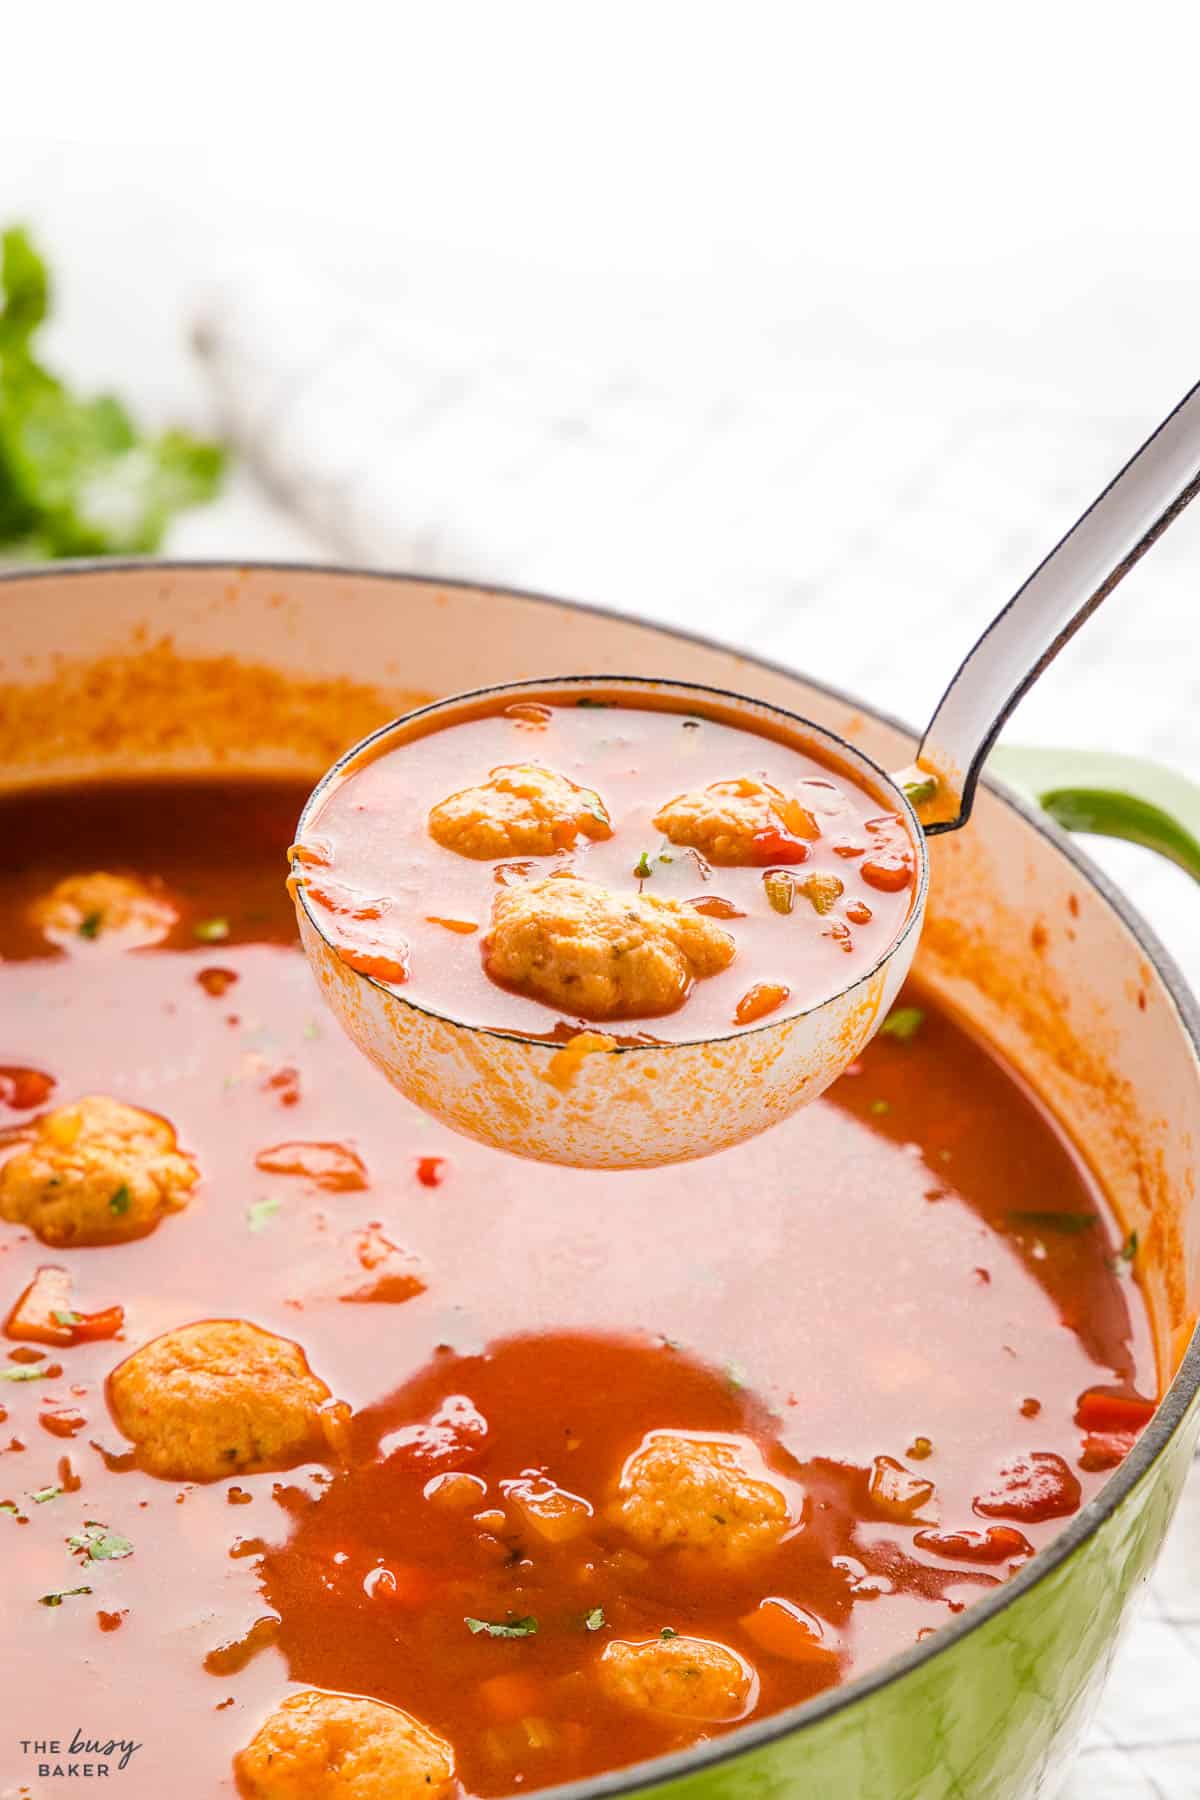 a soup ladle of meatball soup or ciorba de perisoare